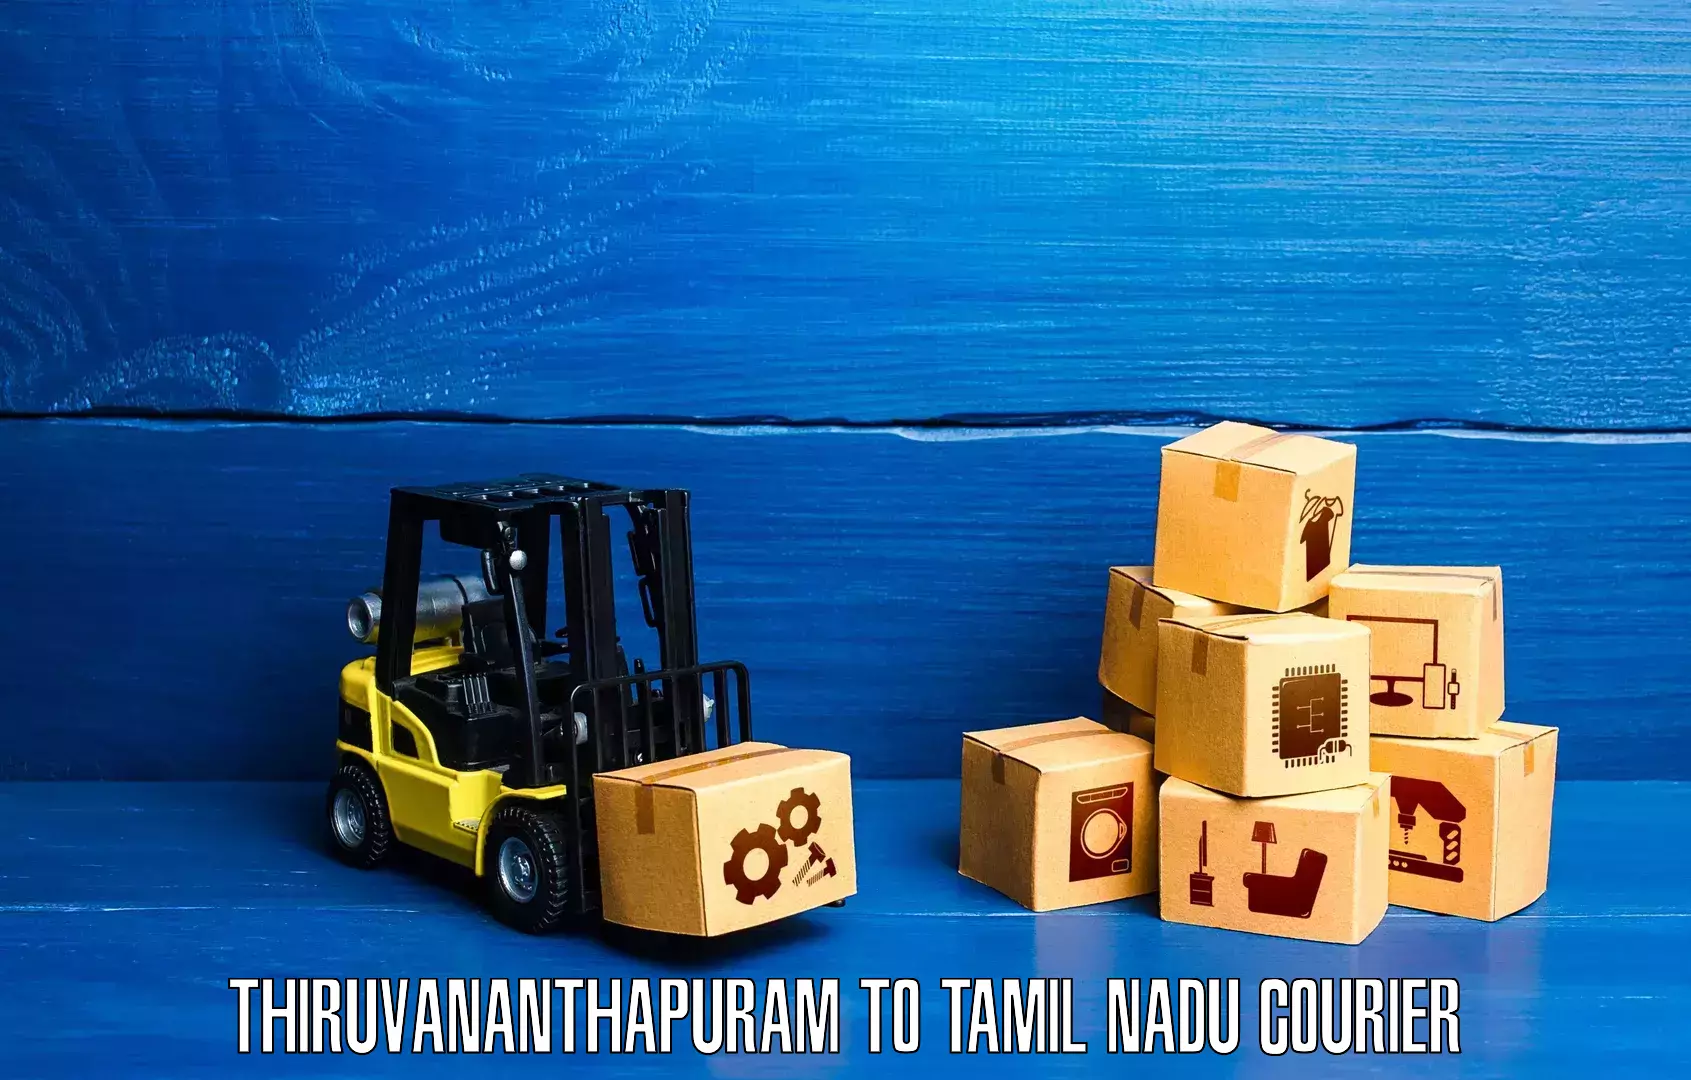 Speedy delivery service in Thiruvananthapuram to Tamil Nadu